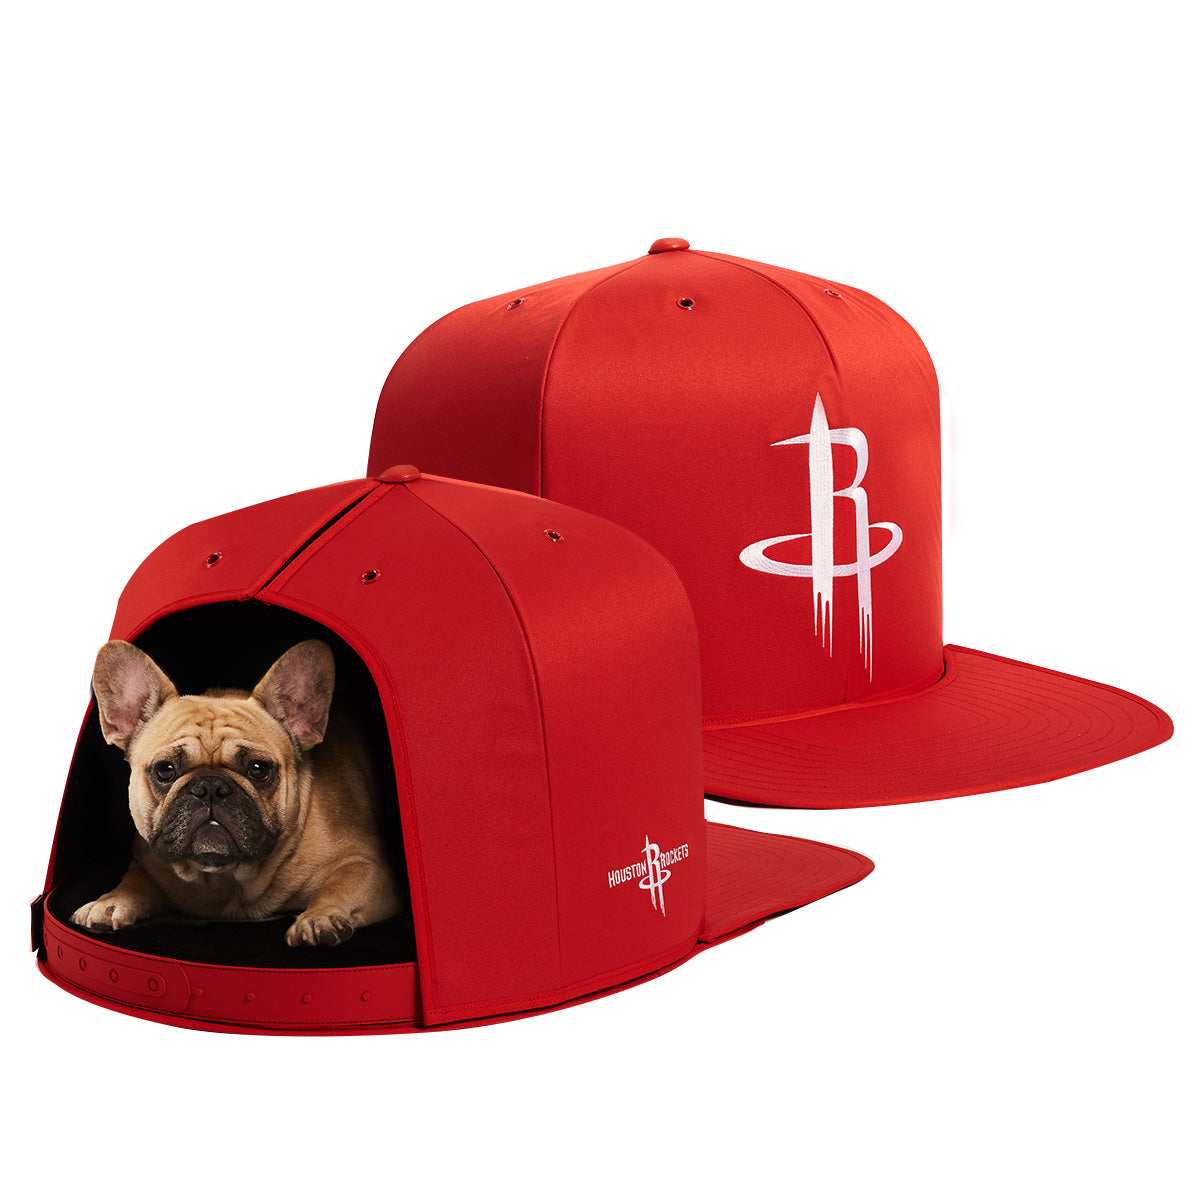 Nap Cap - NBA - Houston Rockets - Pet Bed